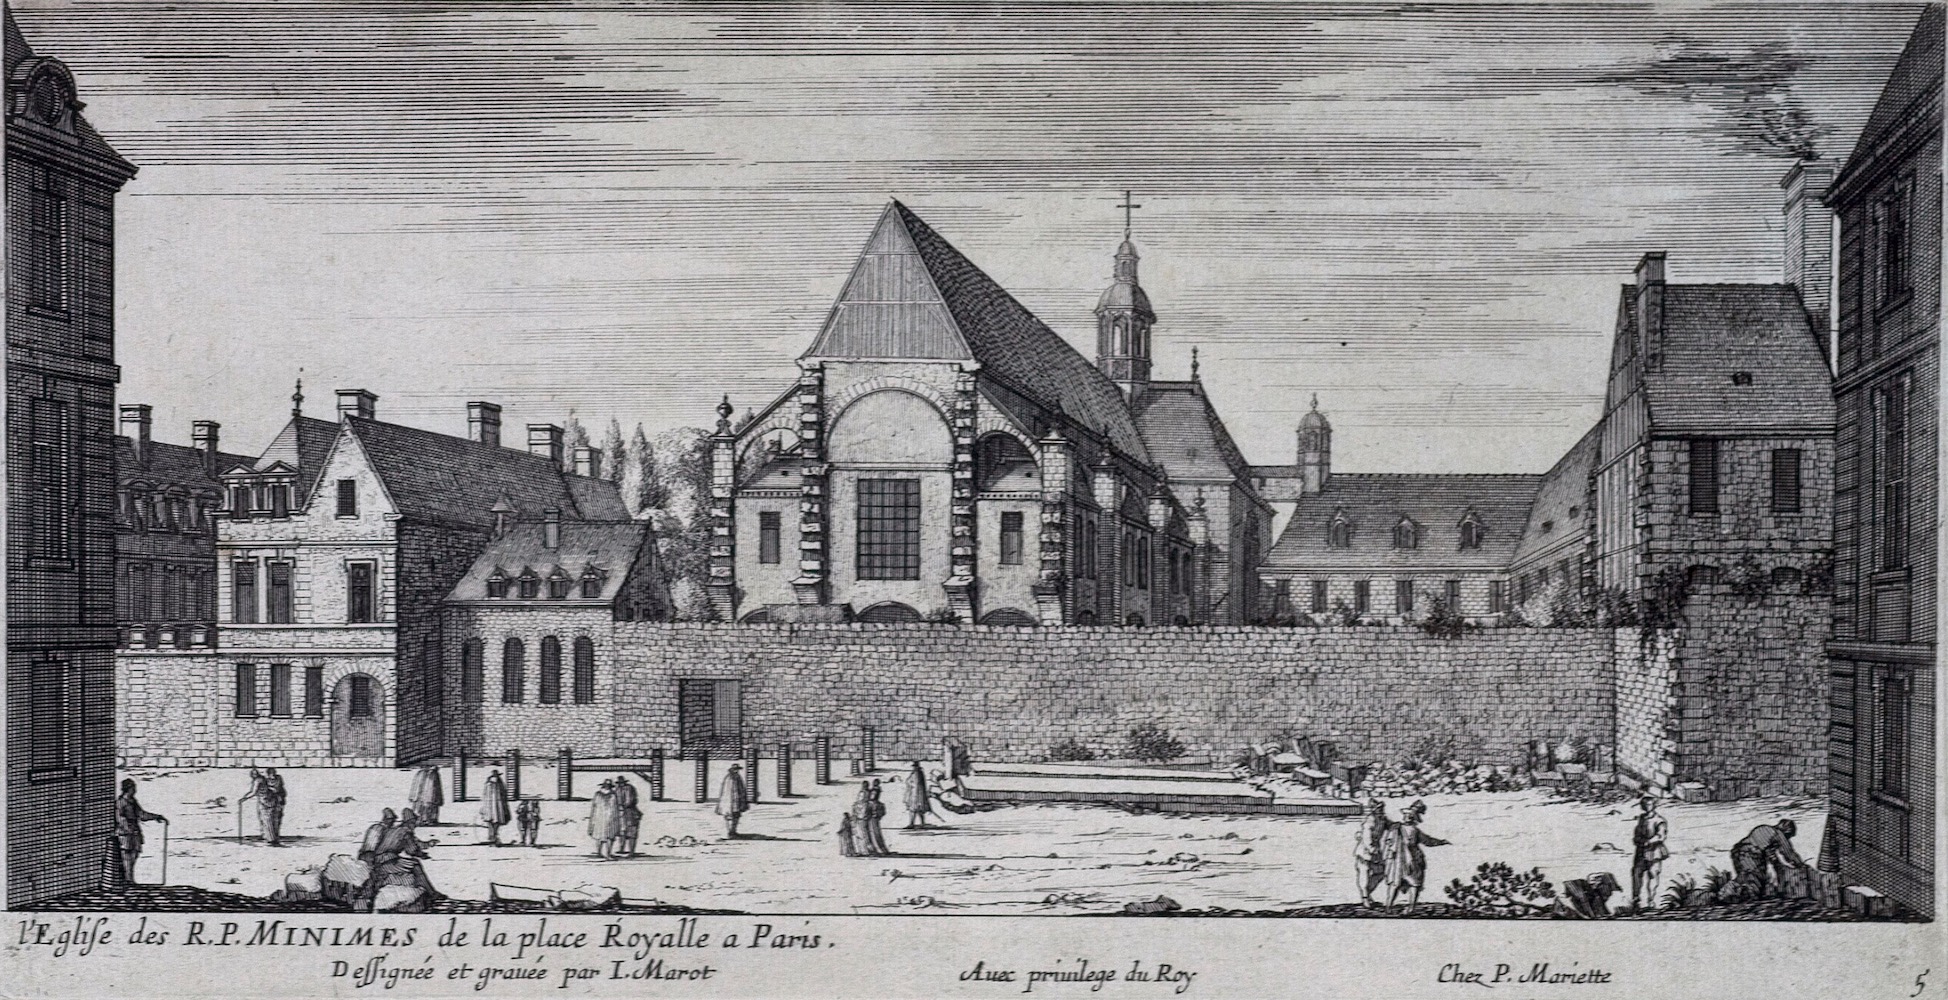 Convent of the Minimes de la place Royale